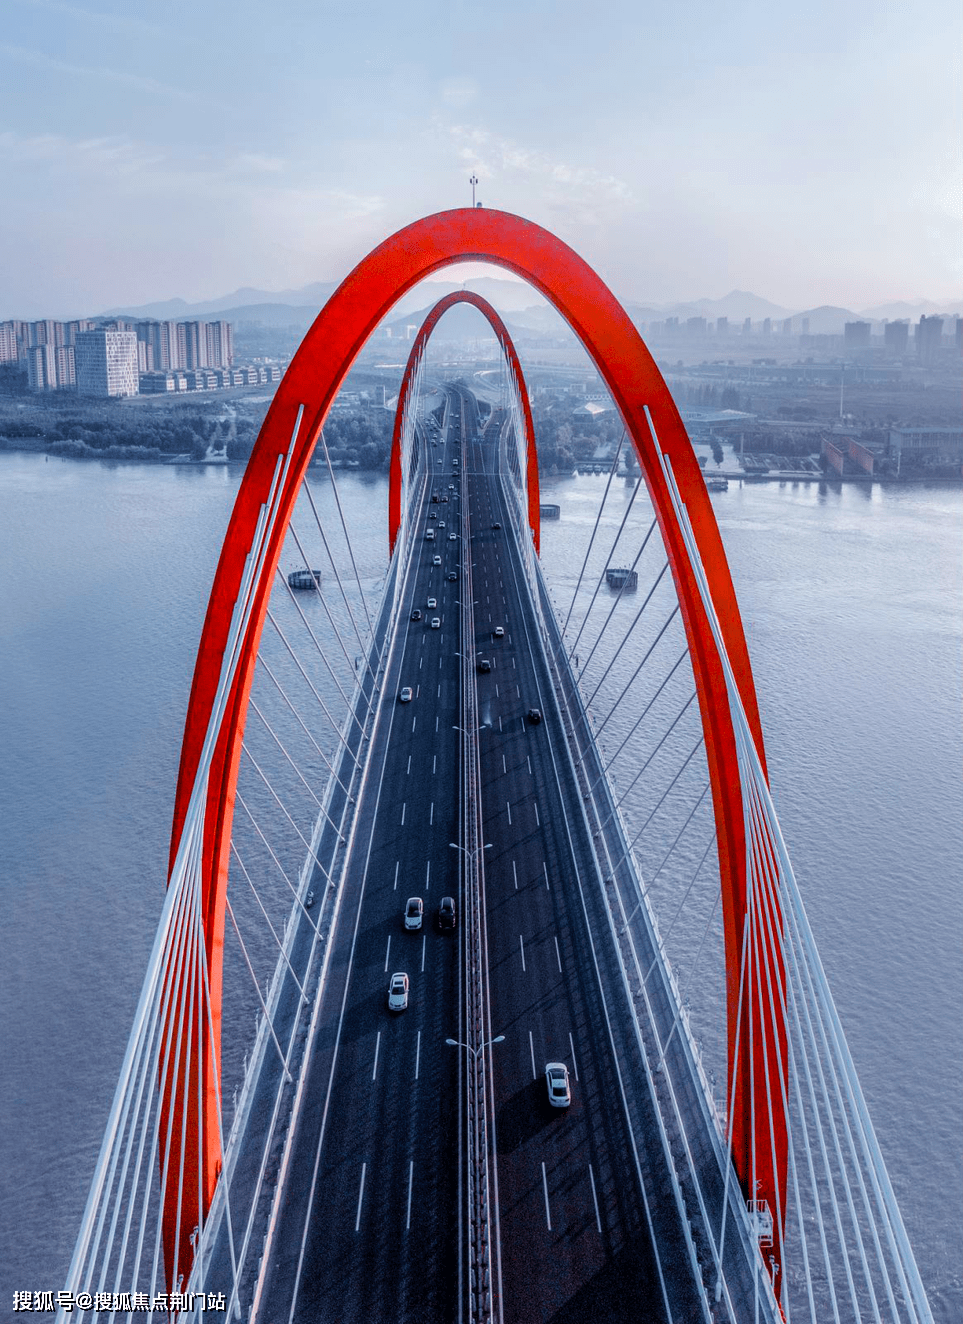 沿着彩虹快速路,跨过之江大桥,眼前是富春江给予路人的自然回礼,偶然